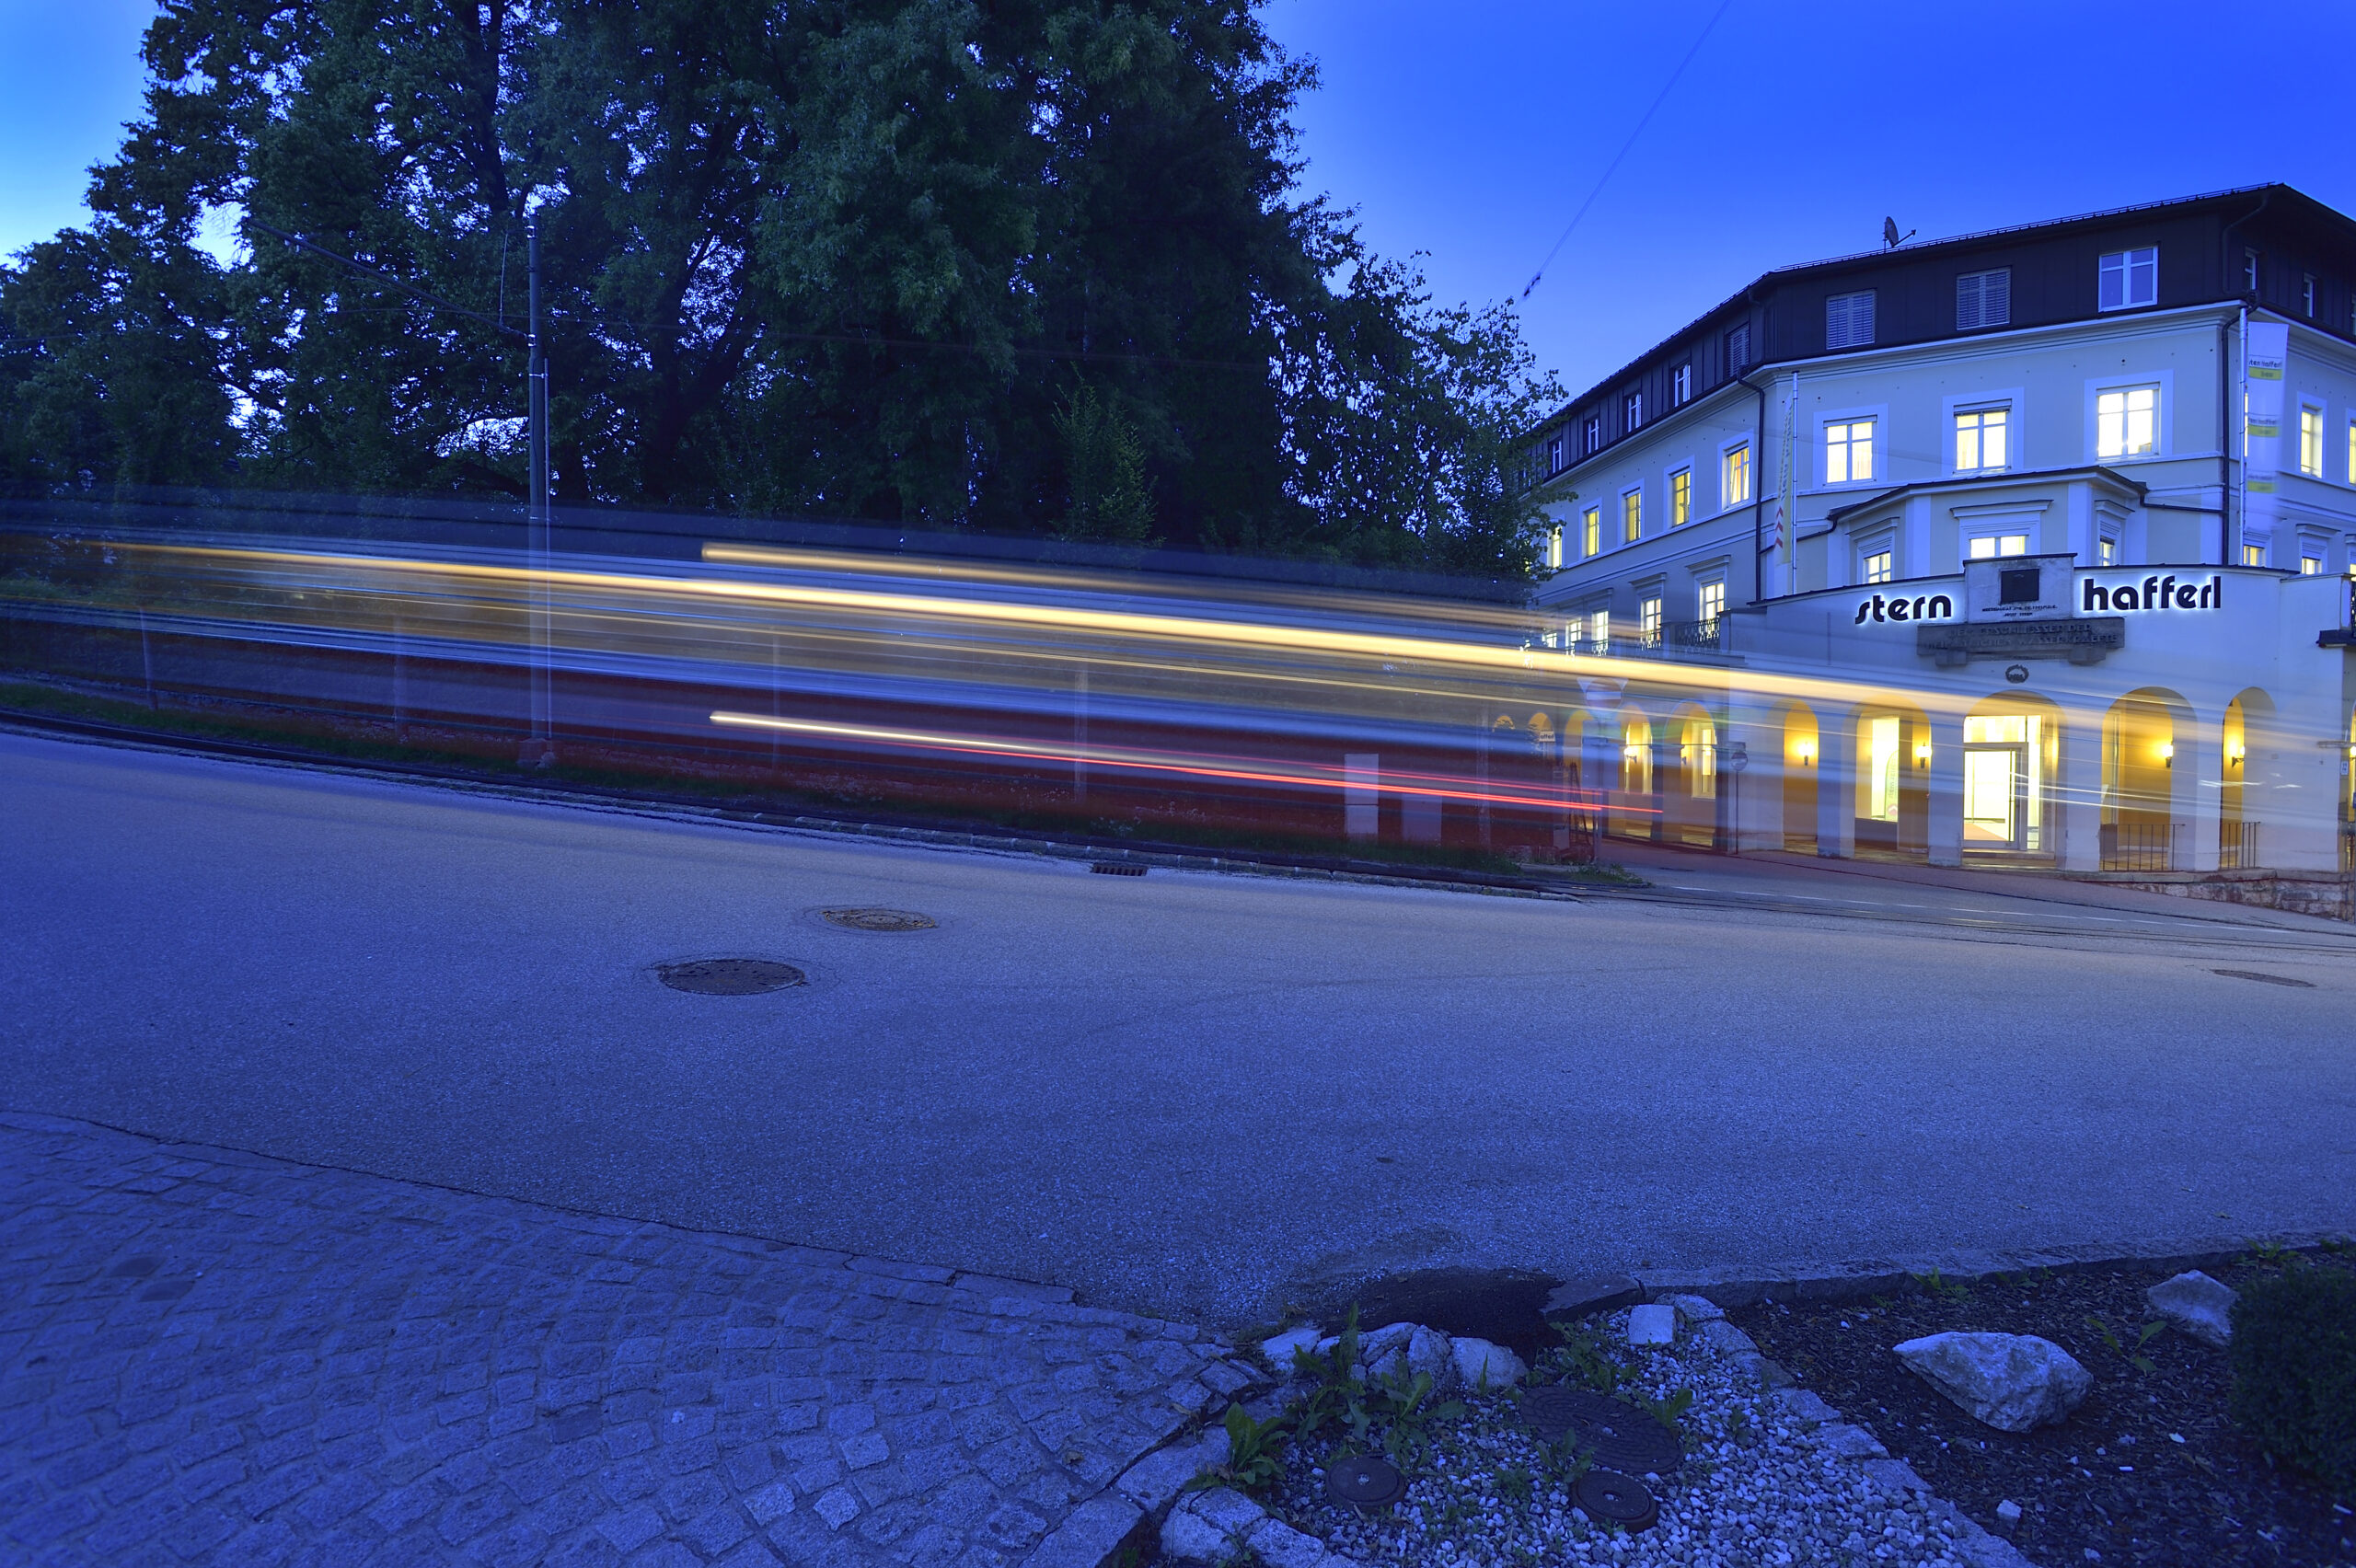 Arkadenhaus/Firmensitz von Stern & Hafferl mit einem verwischten vorbeifahrenden Zug im Vordergrund